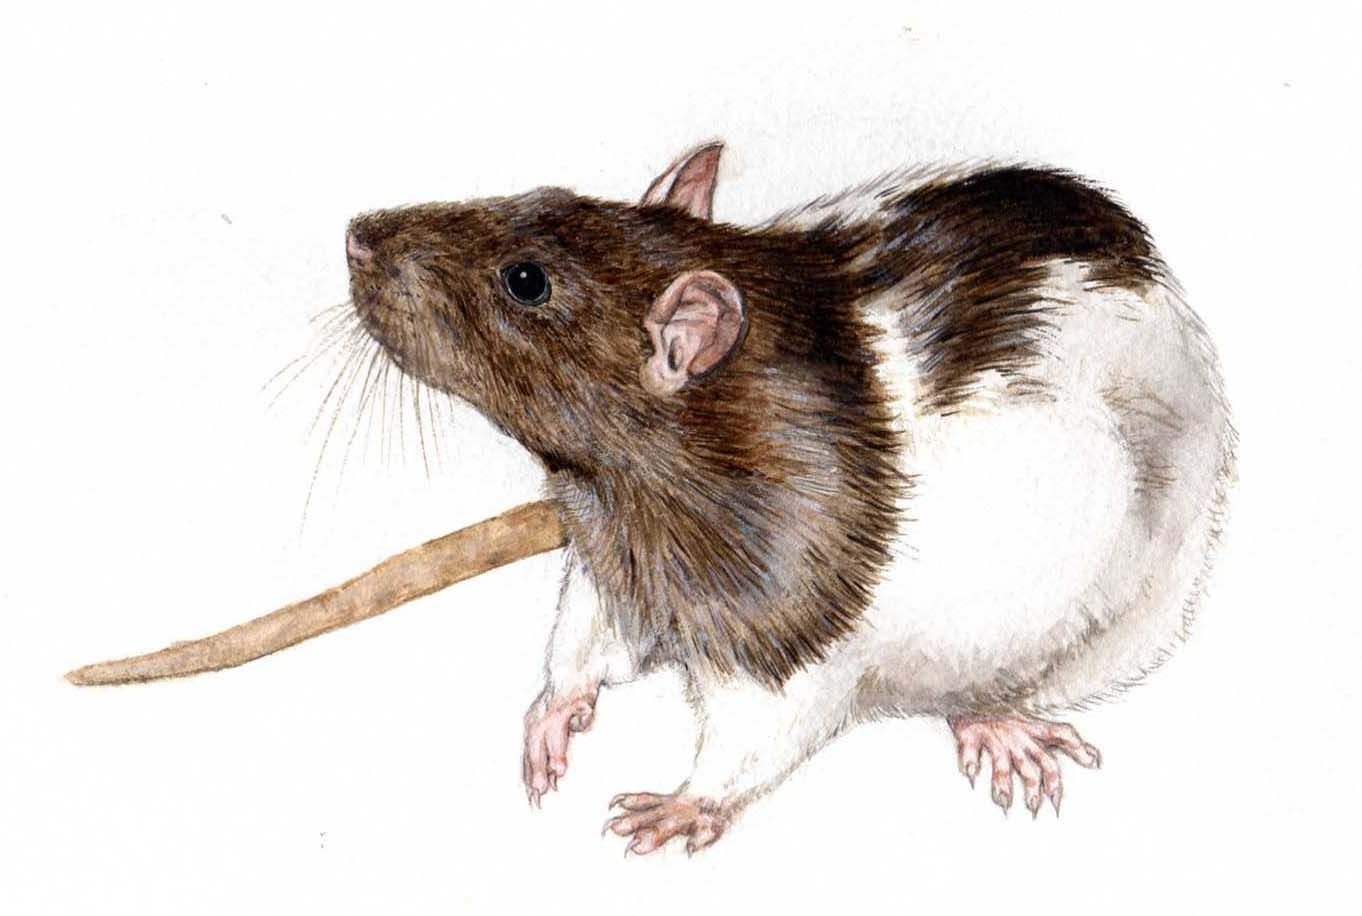 Нарисовать крысу